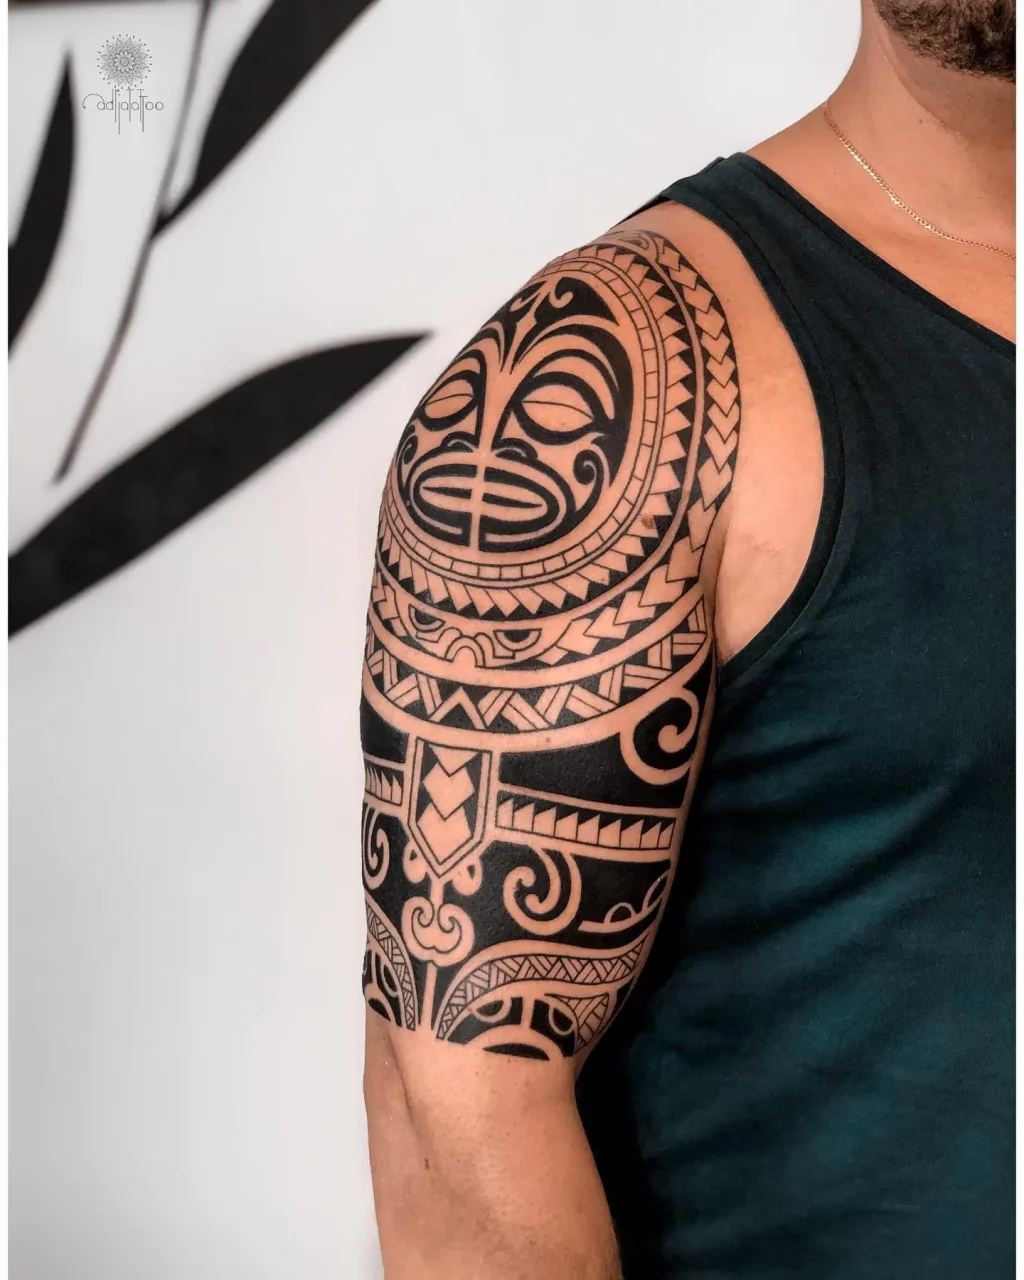 Detailed Samoan Tattoo